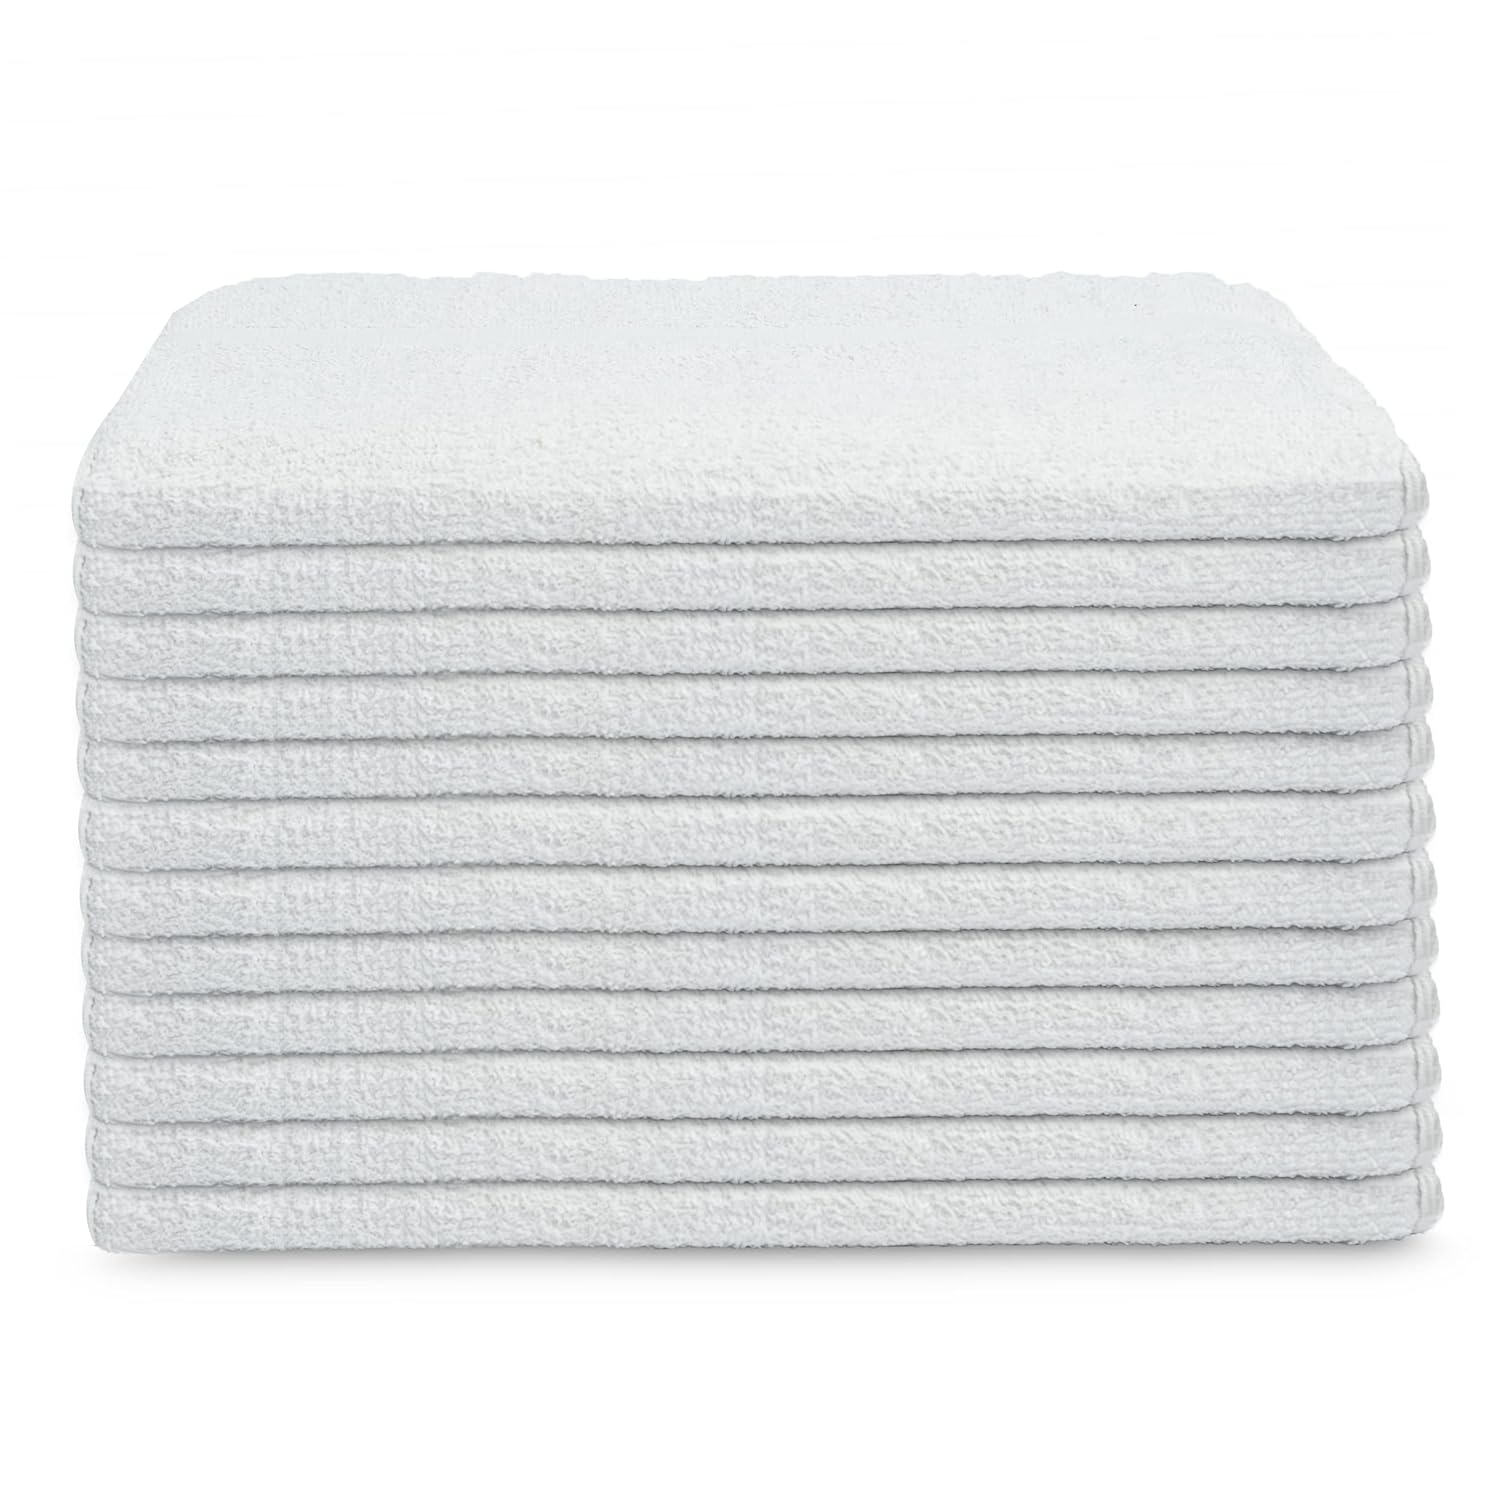 White Shop Towels 120 trapos de 16 x 27 pulgadas en una caja, valiosos trapos